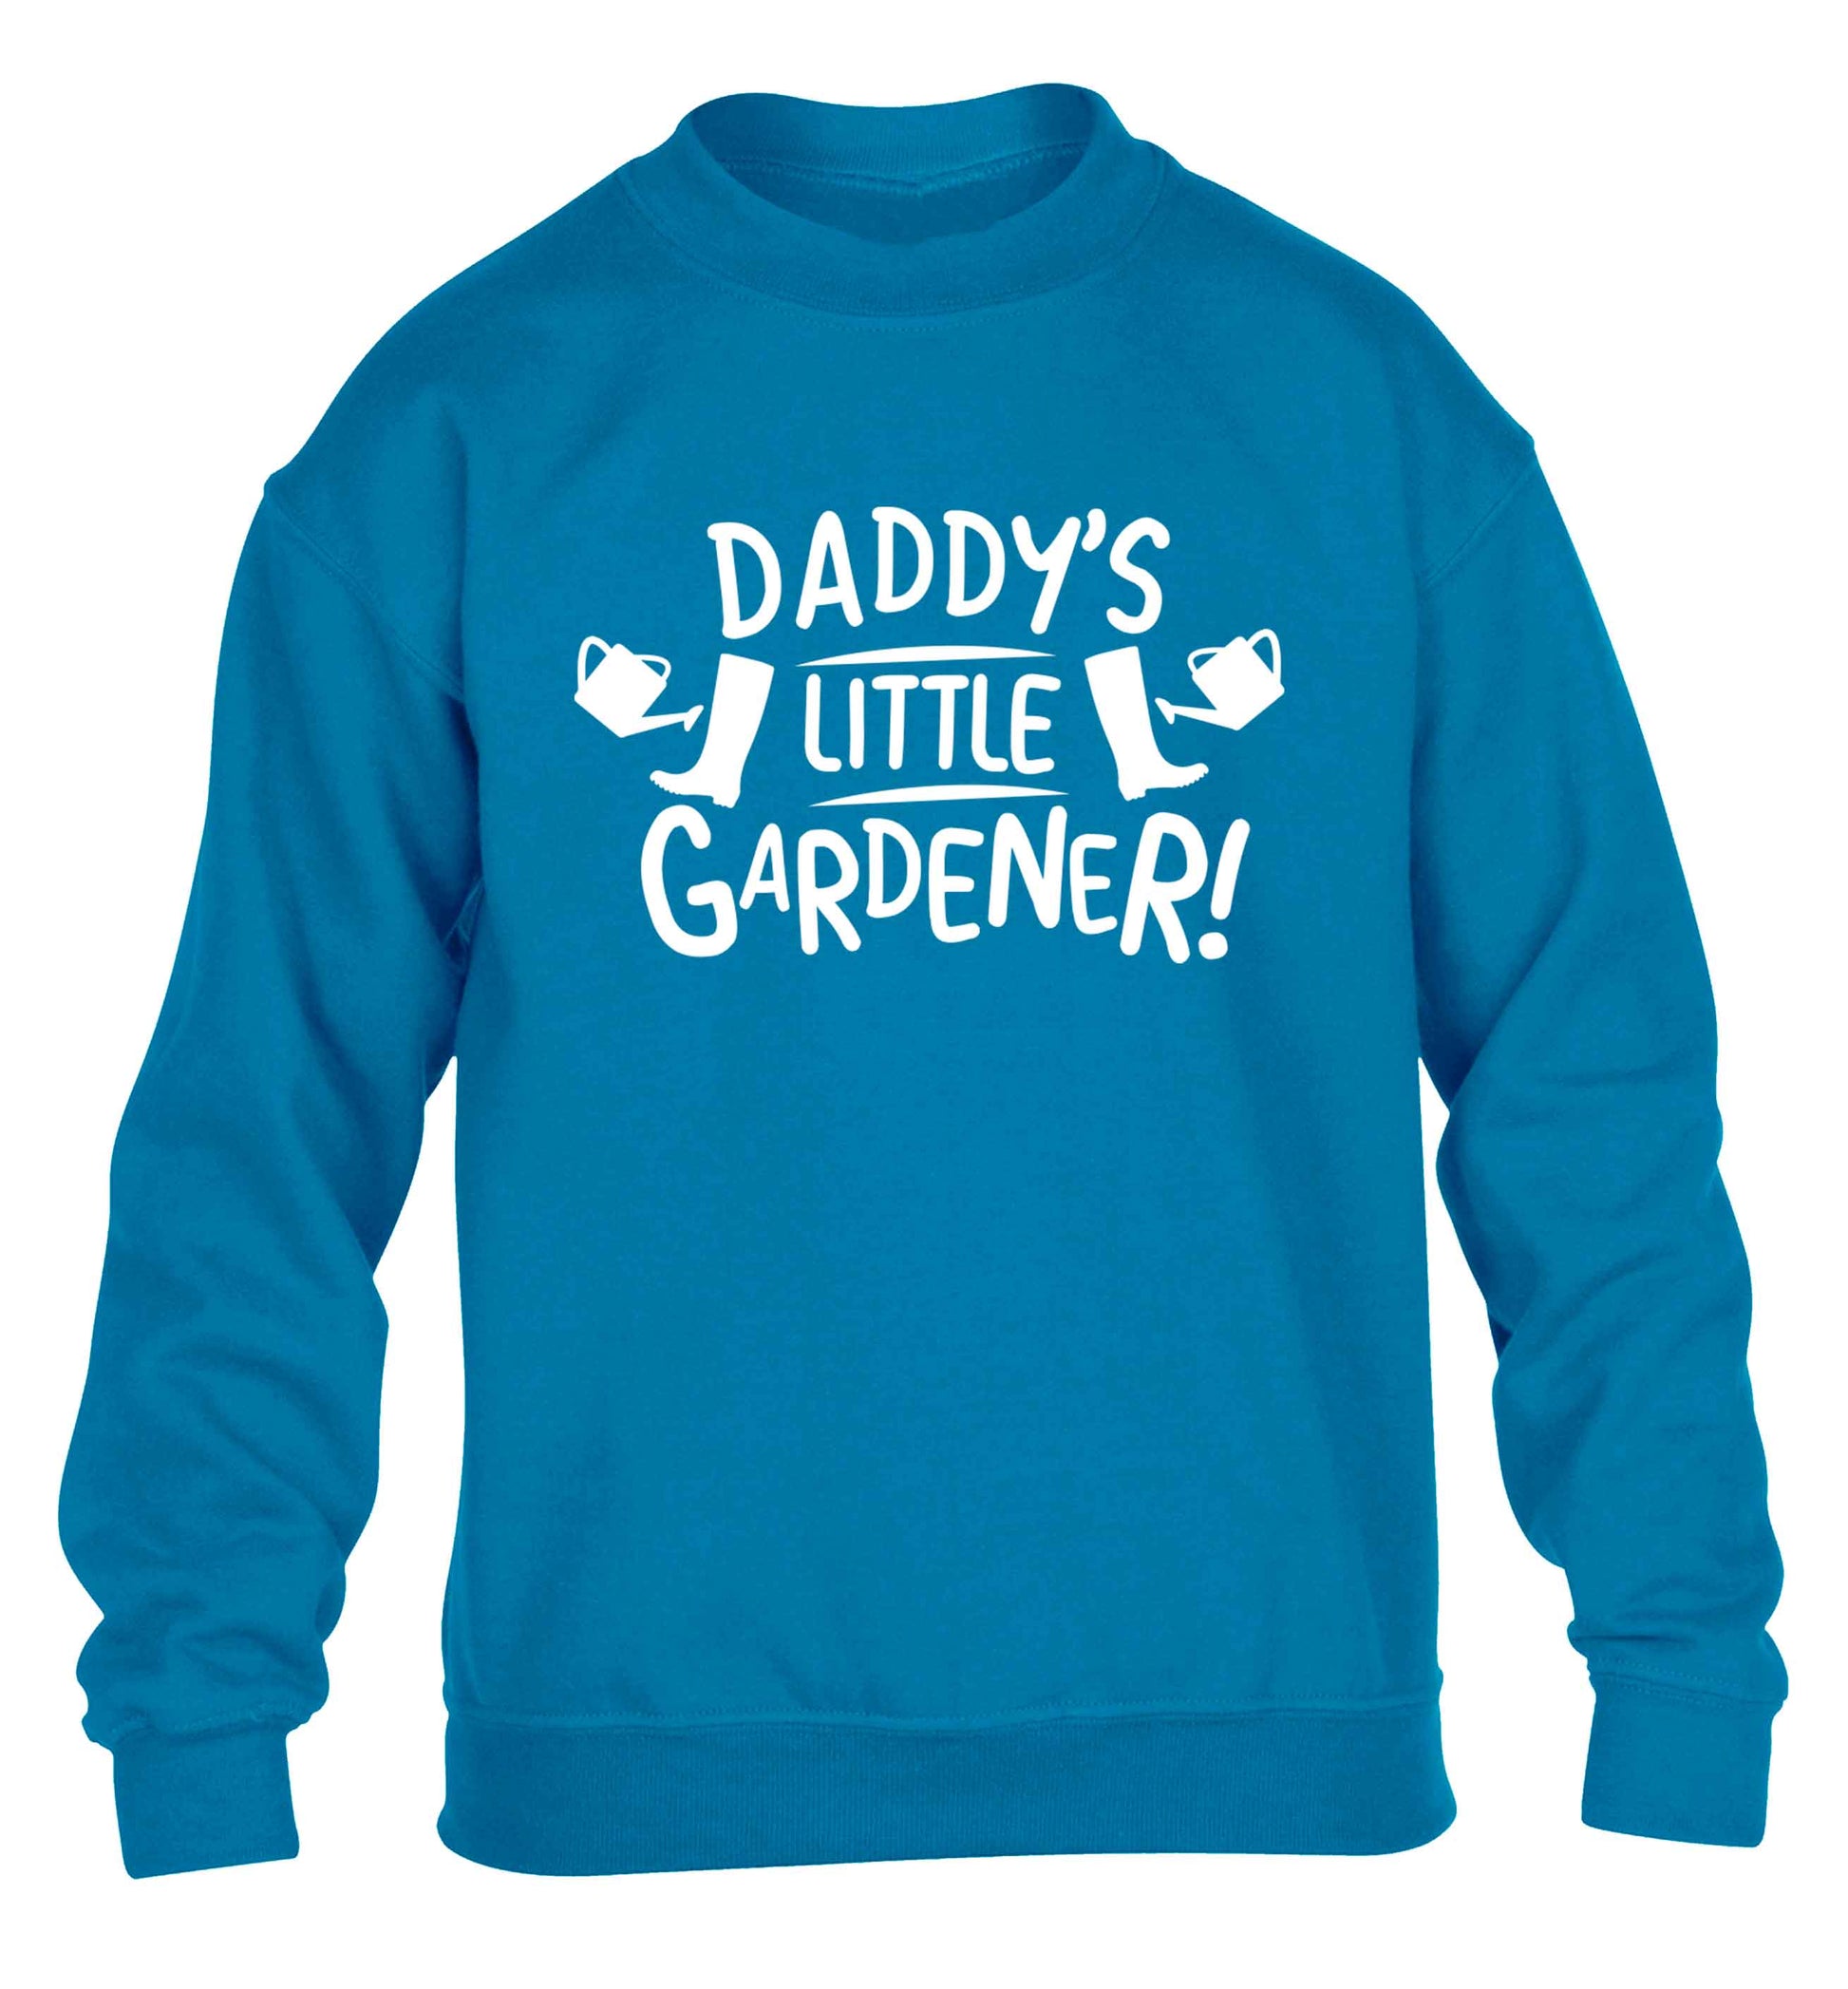 Daddy's little gardener children's blue sweater 12-13 Years